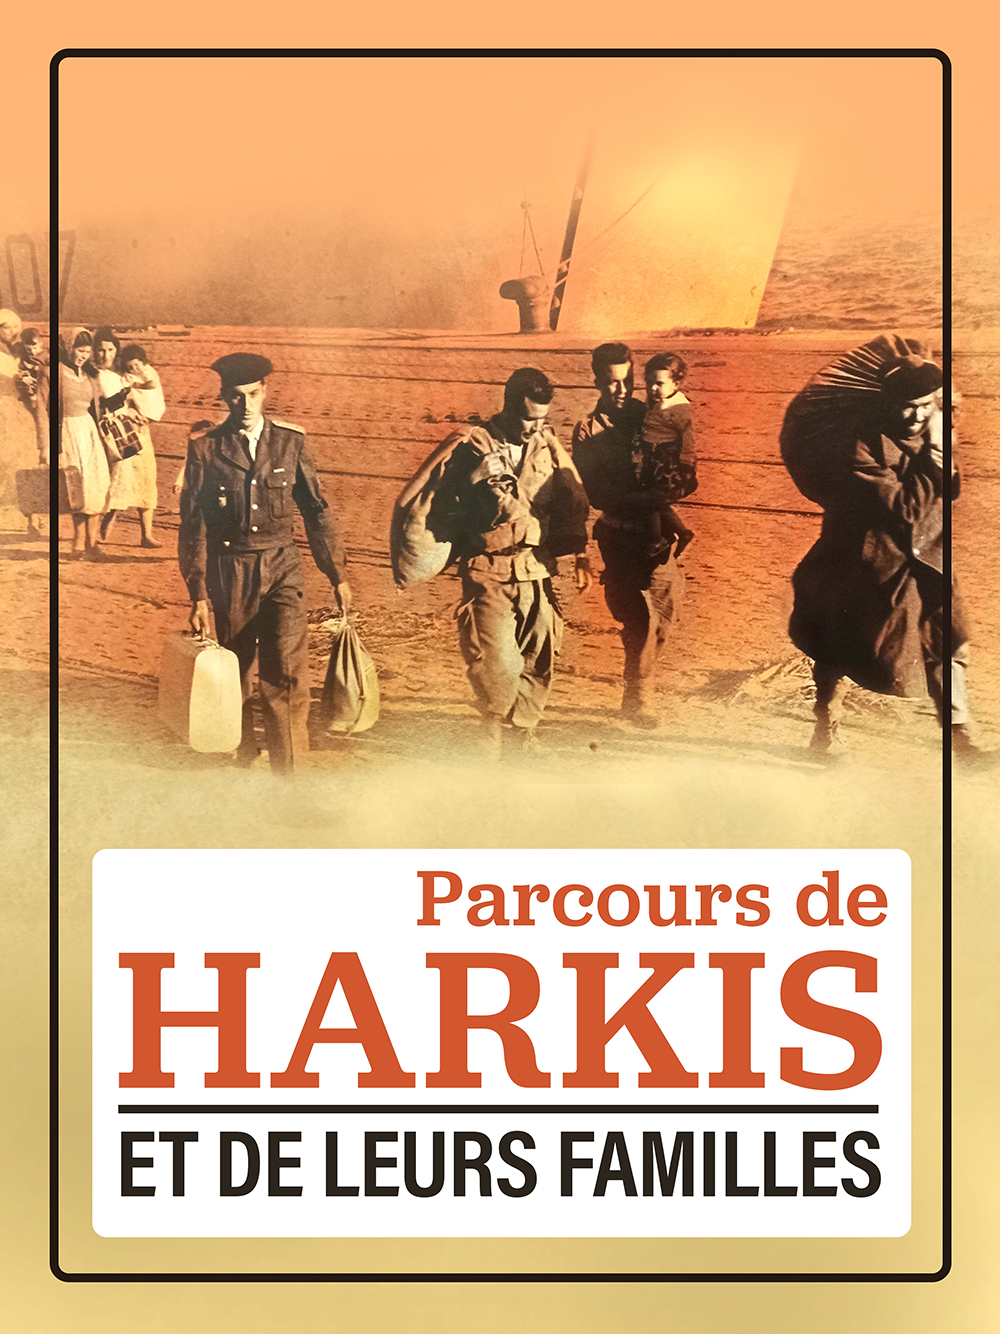 Exposition | Parcours de Harkis